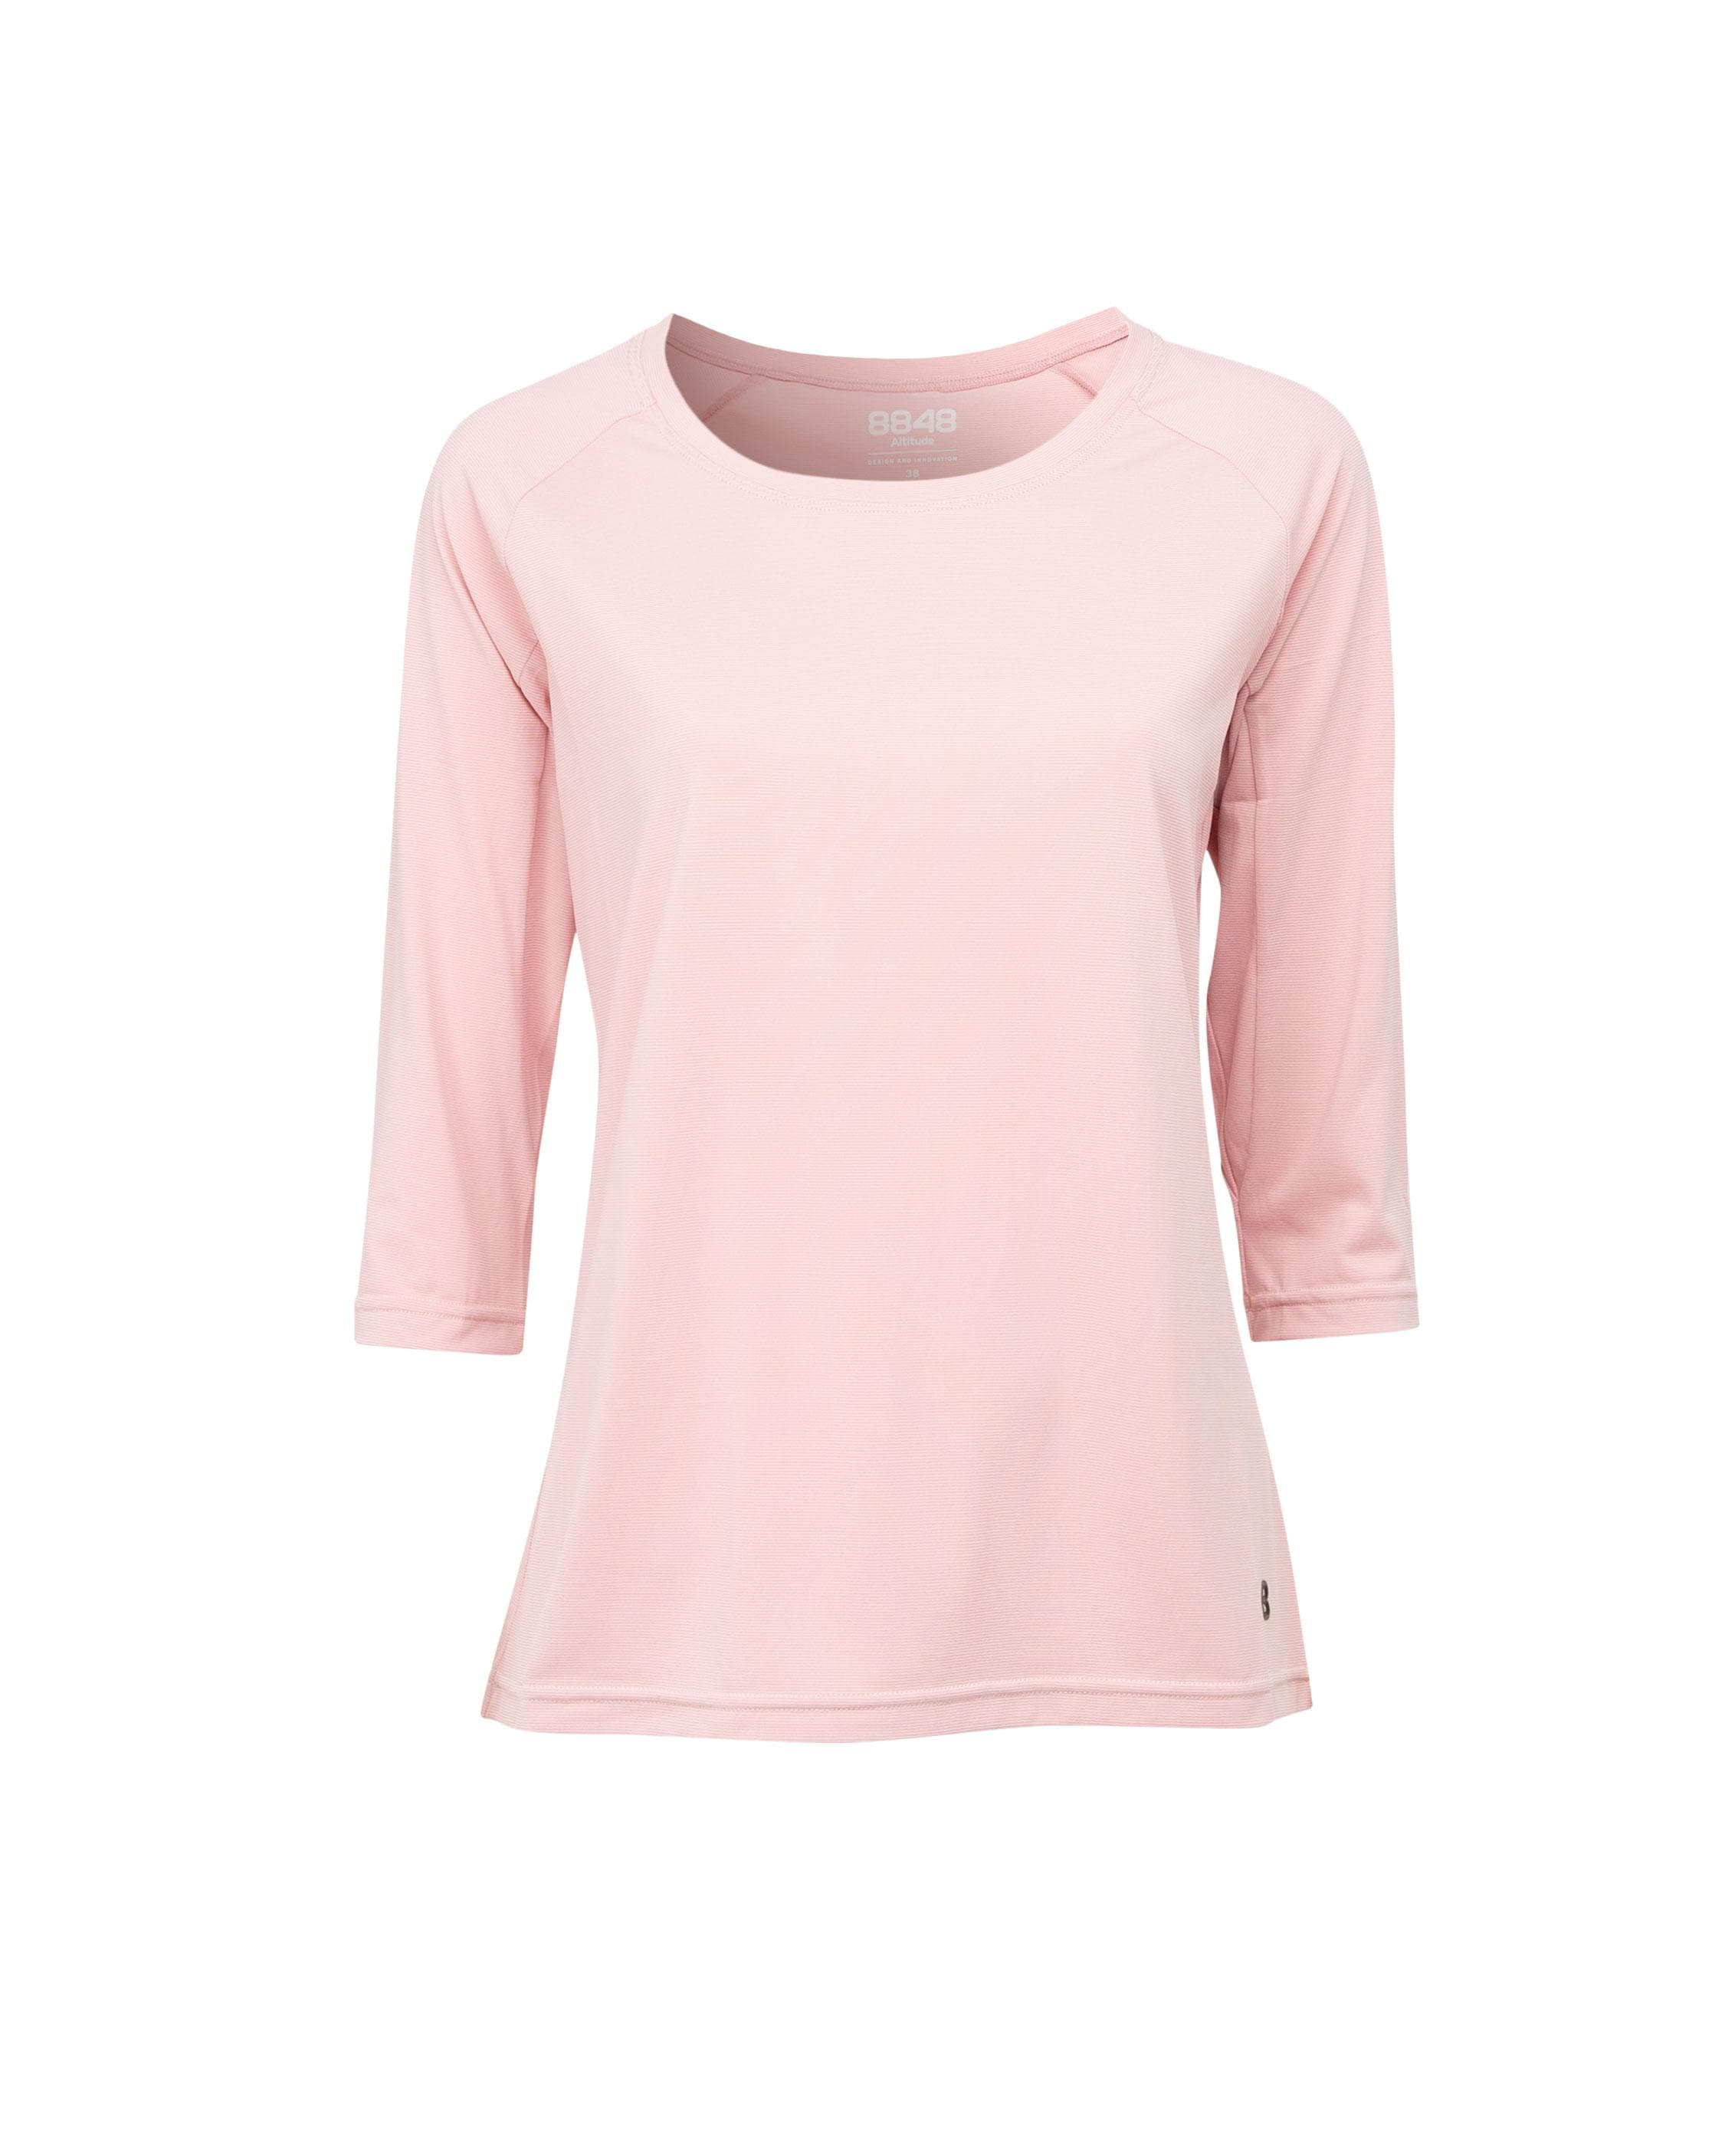 Dandilon W Tee Pink - Pink long sleeve T-shirt women